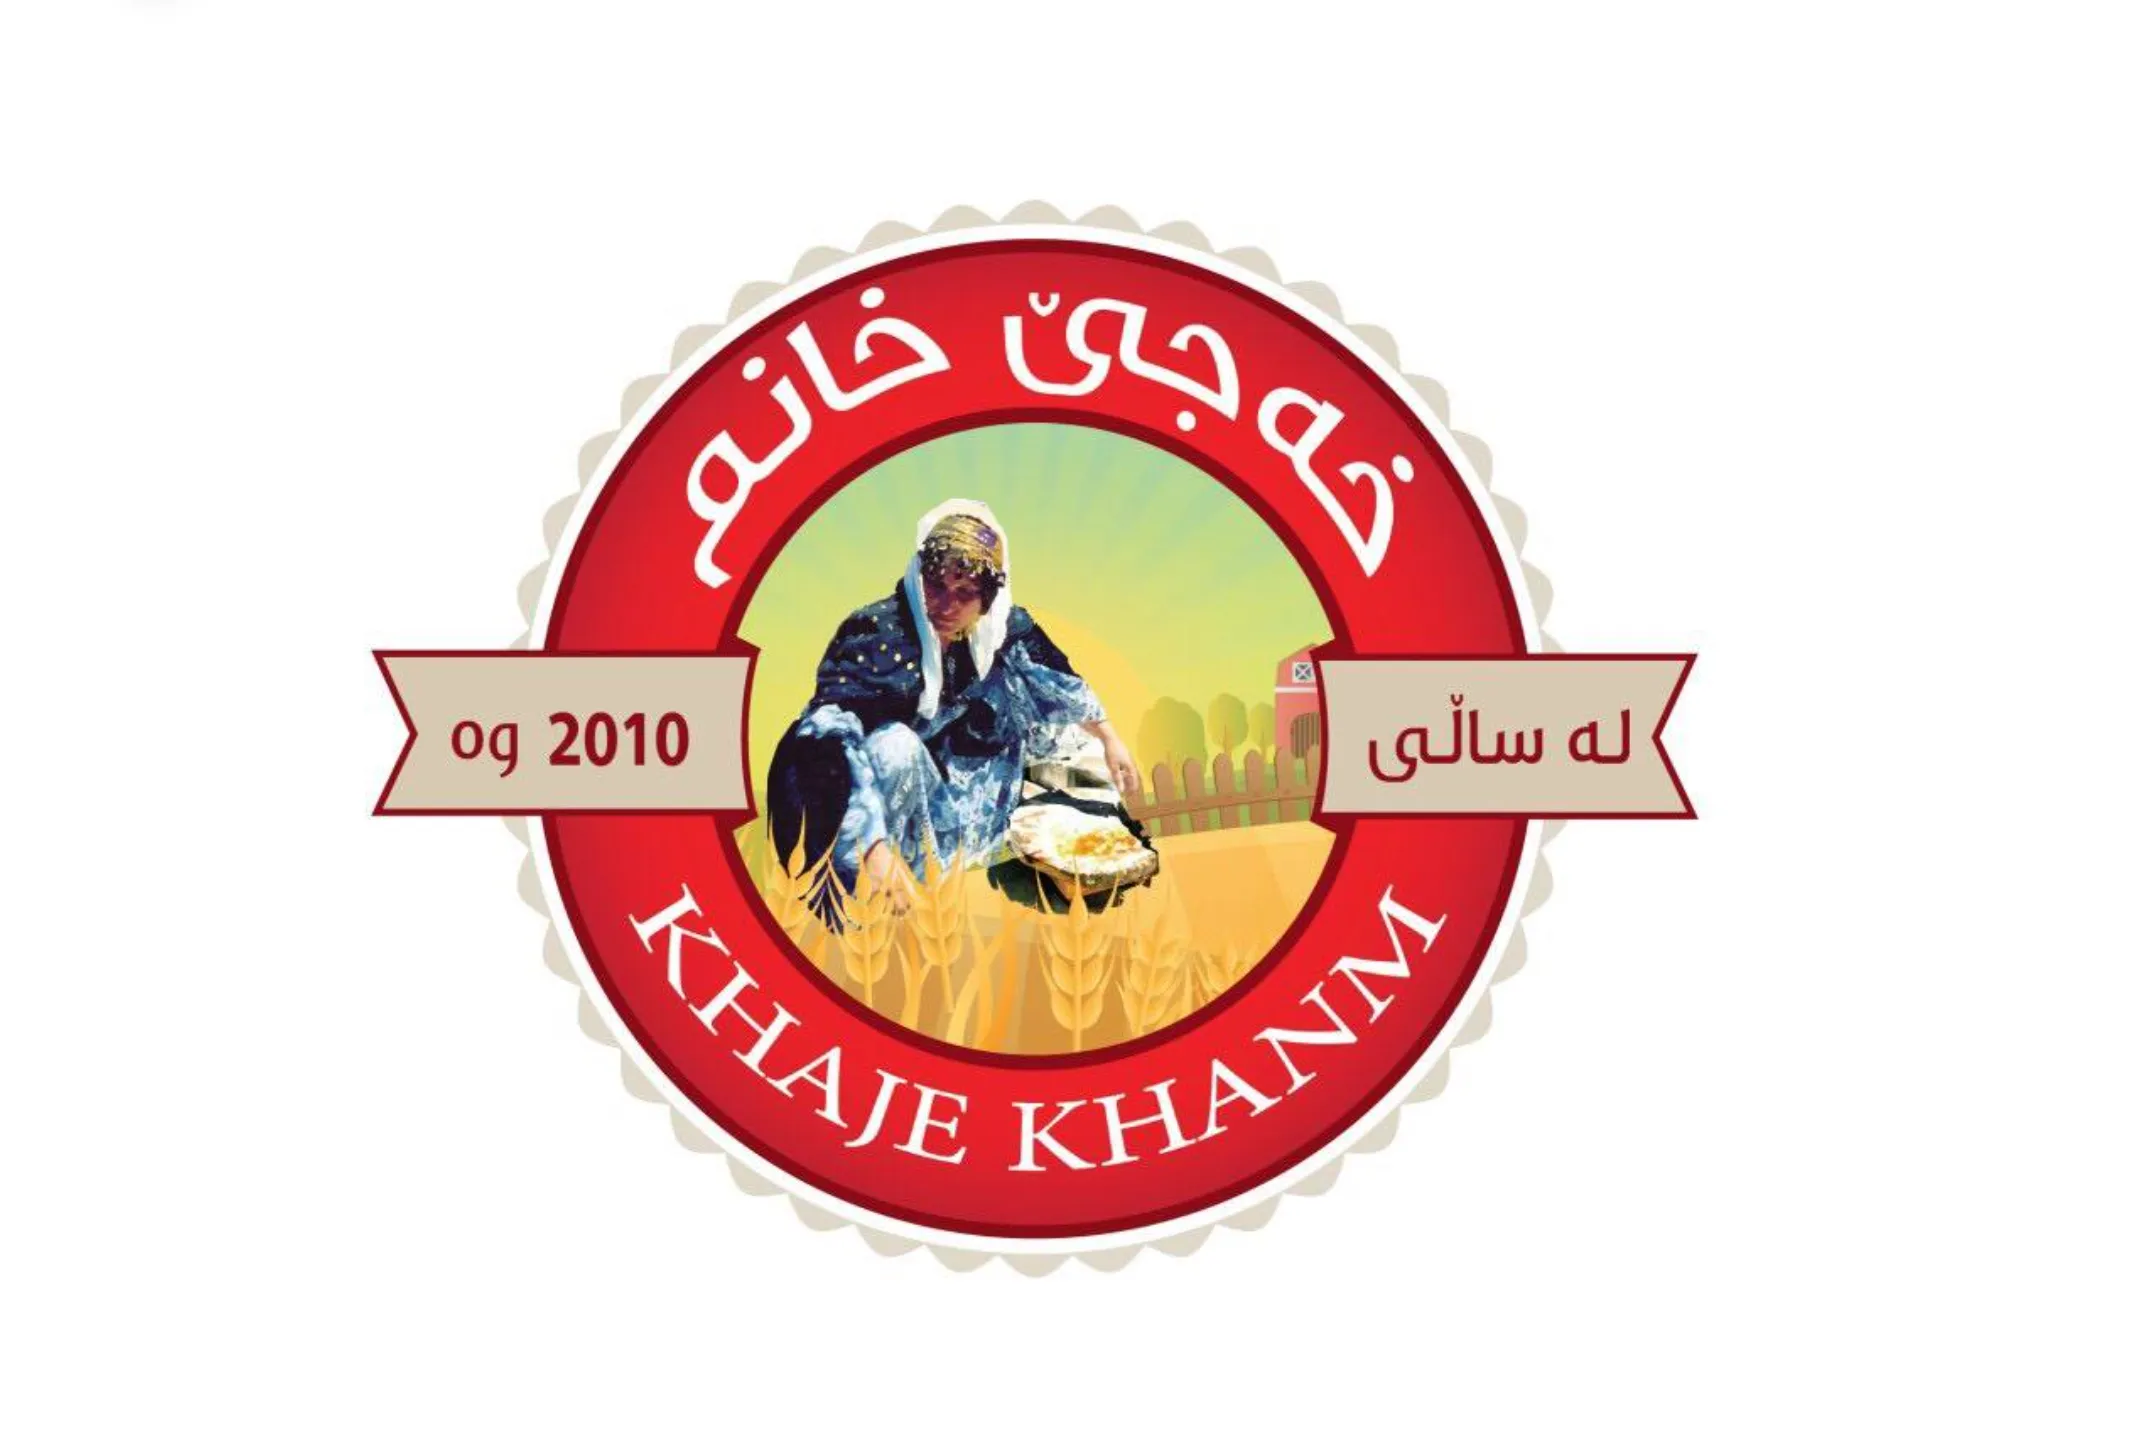 Khaje Khanm